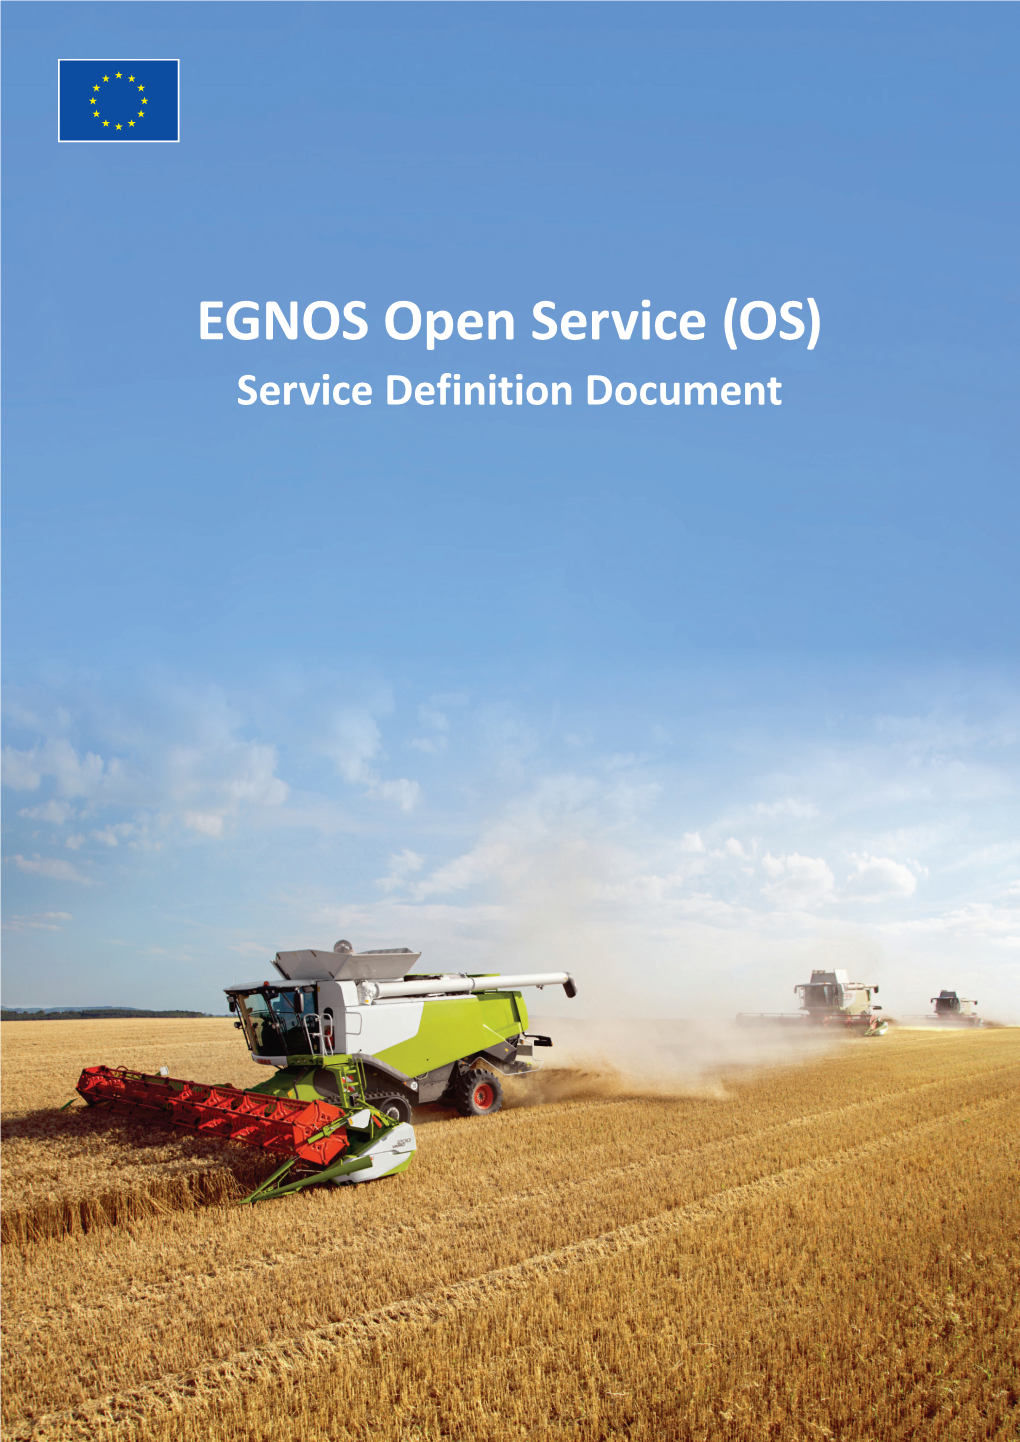 EGNOS Open Service (OS) Service Definition Document EGNOS Open Service (OS)